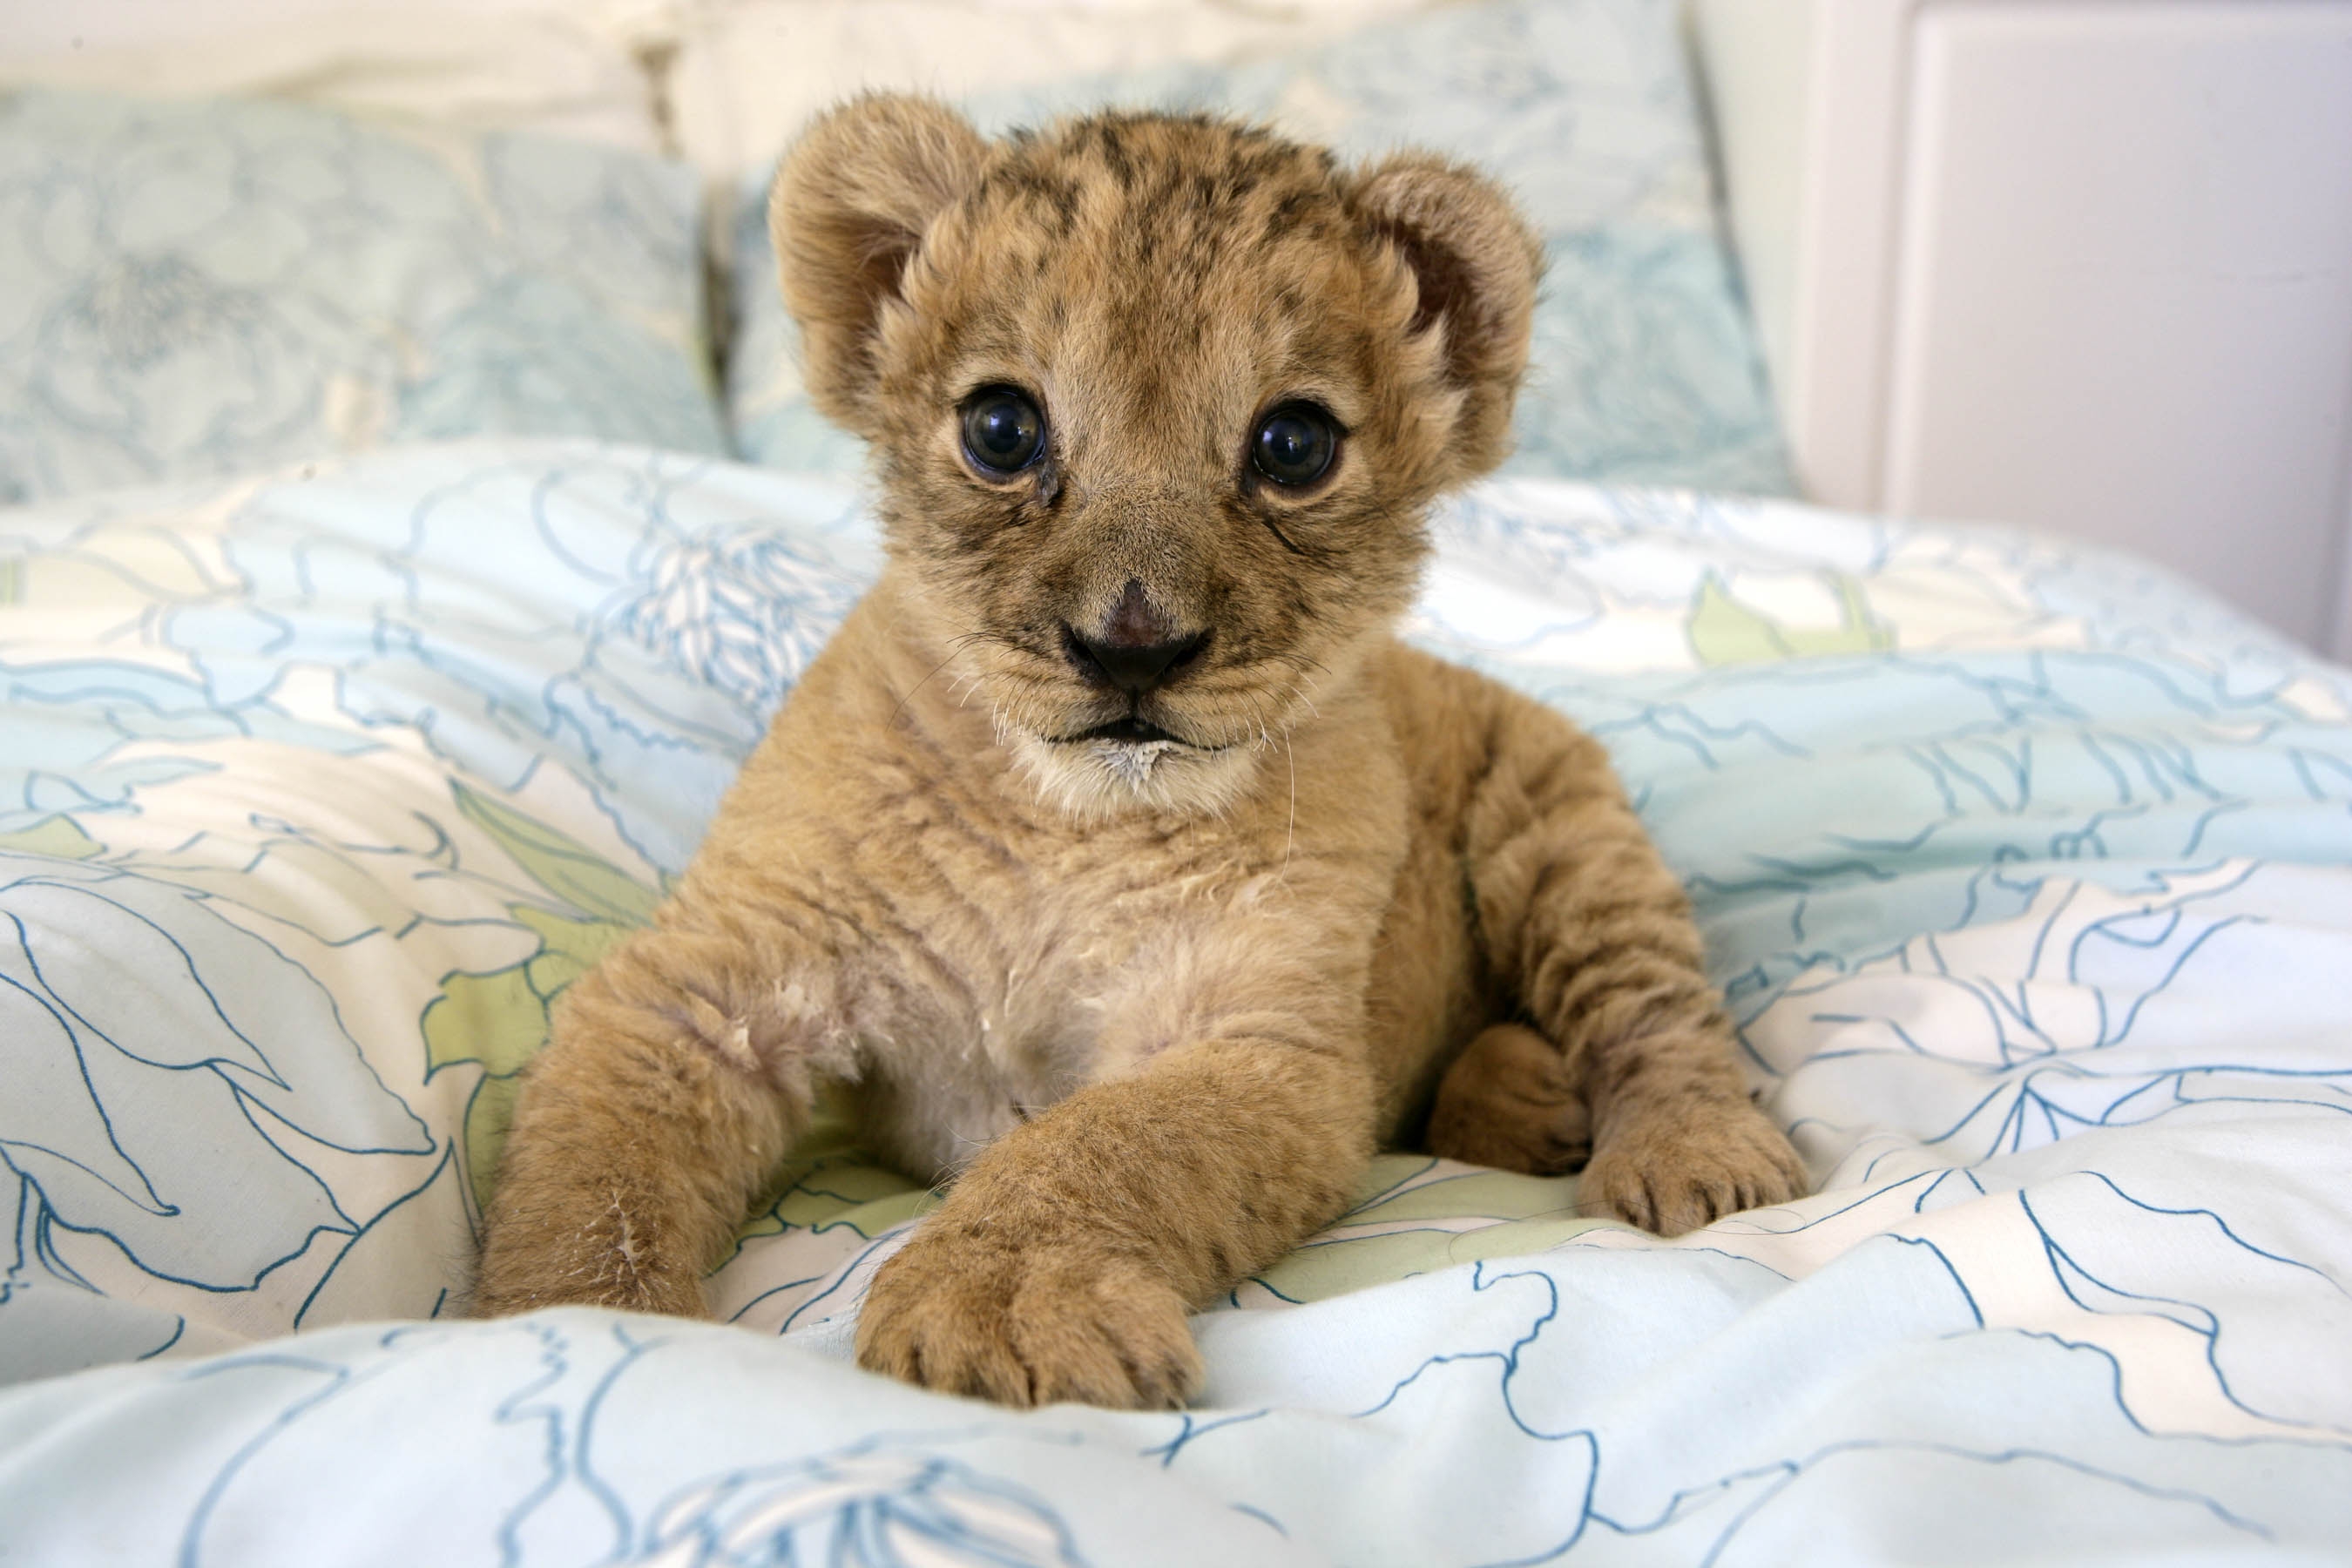 animals, beds, lions, baby animals - desktop wallpaper